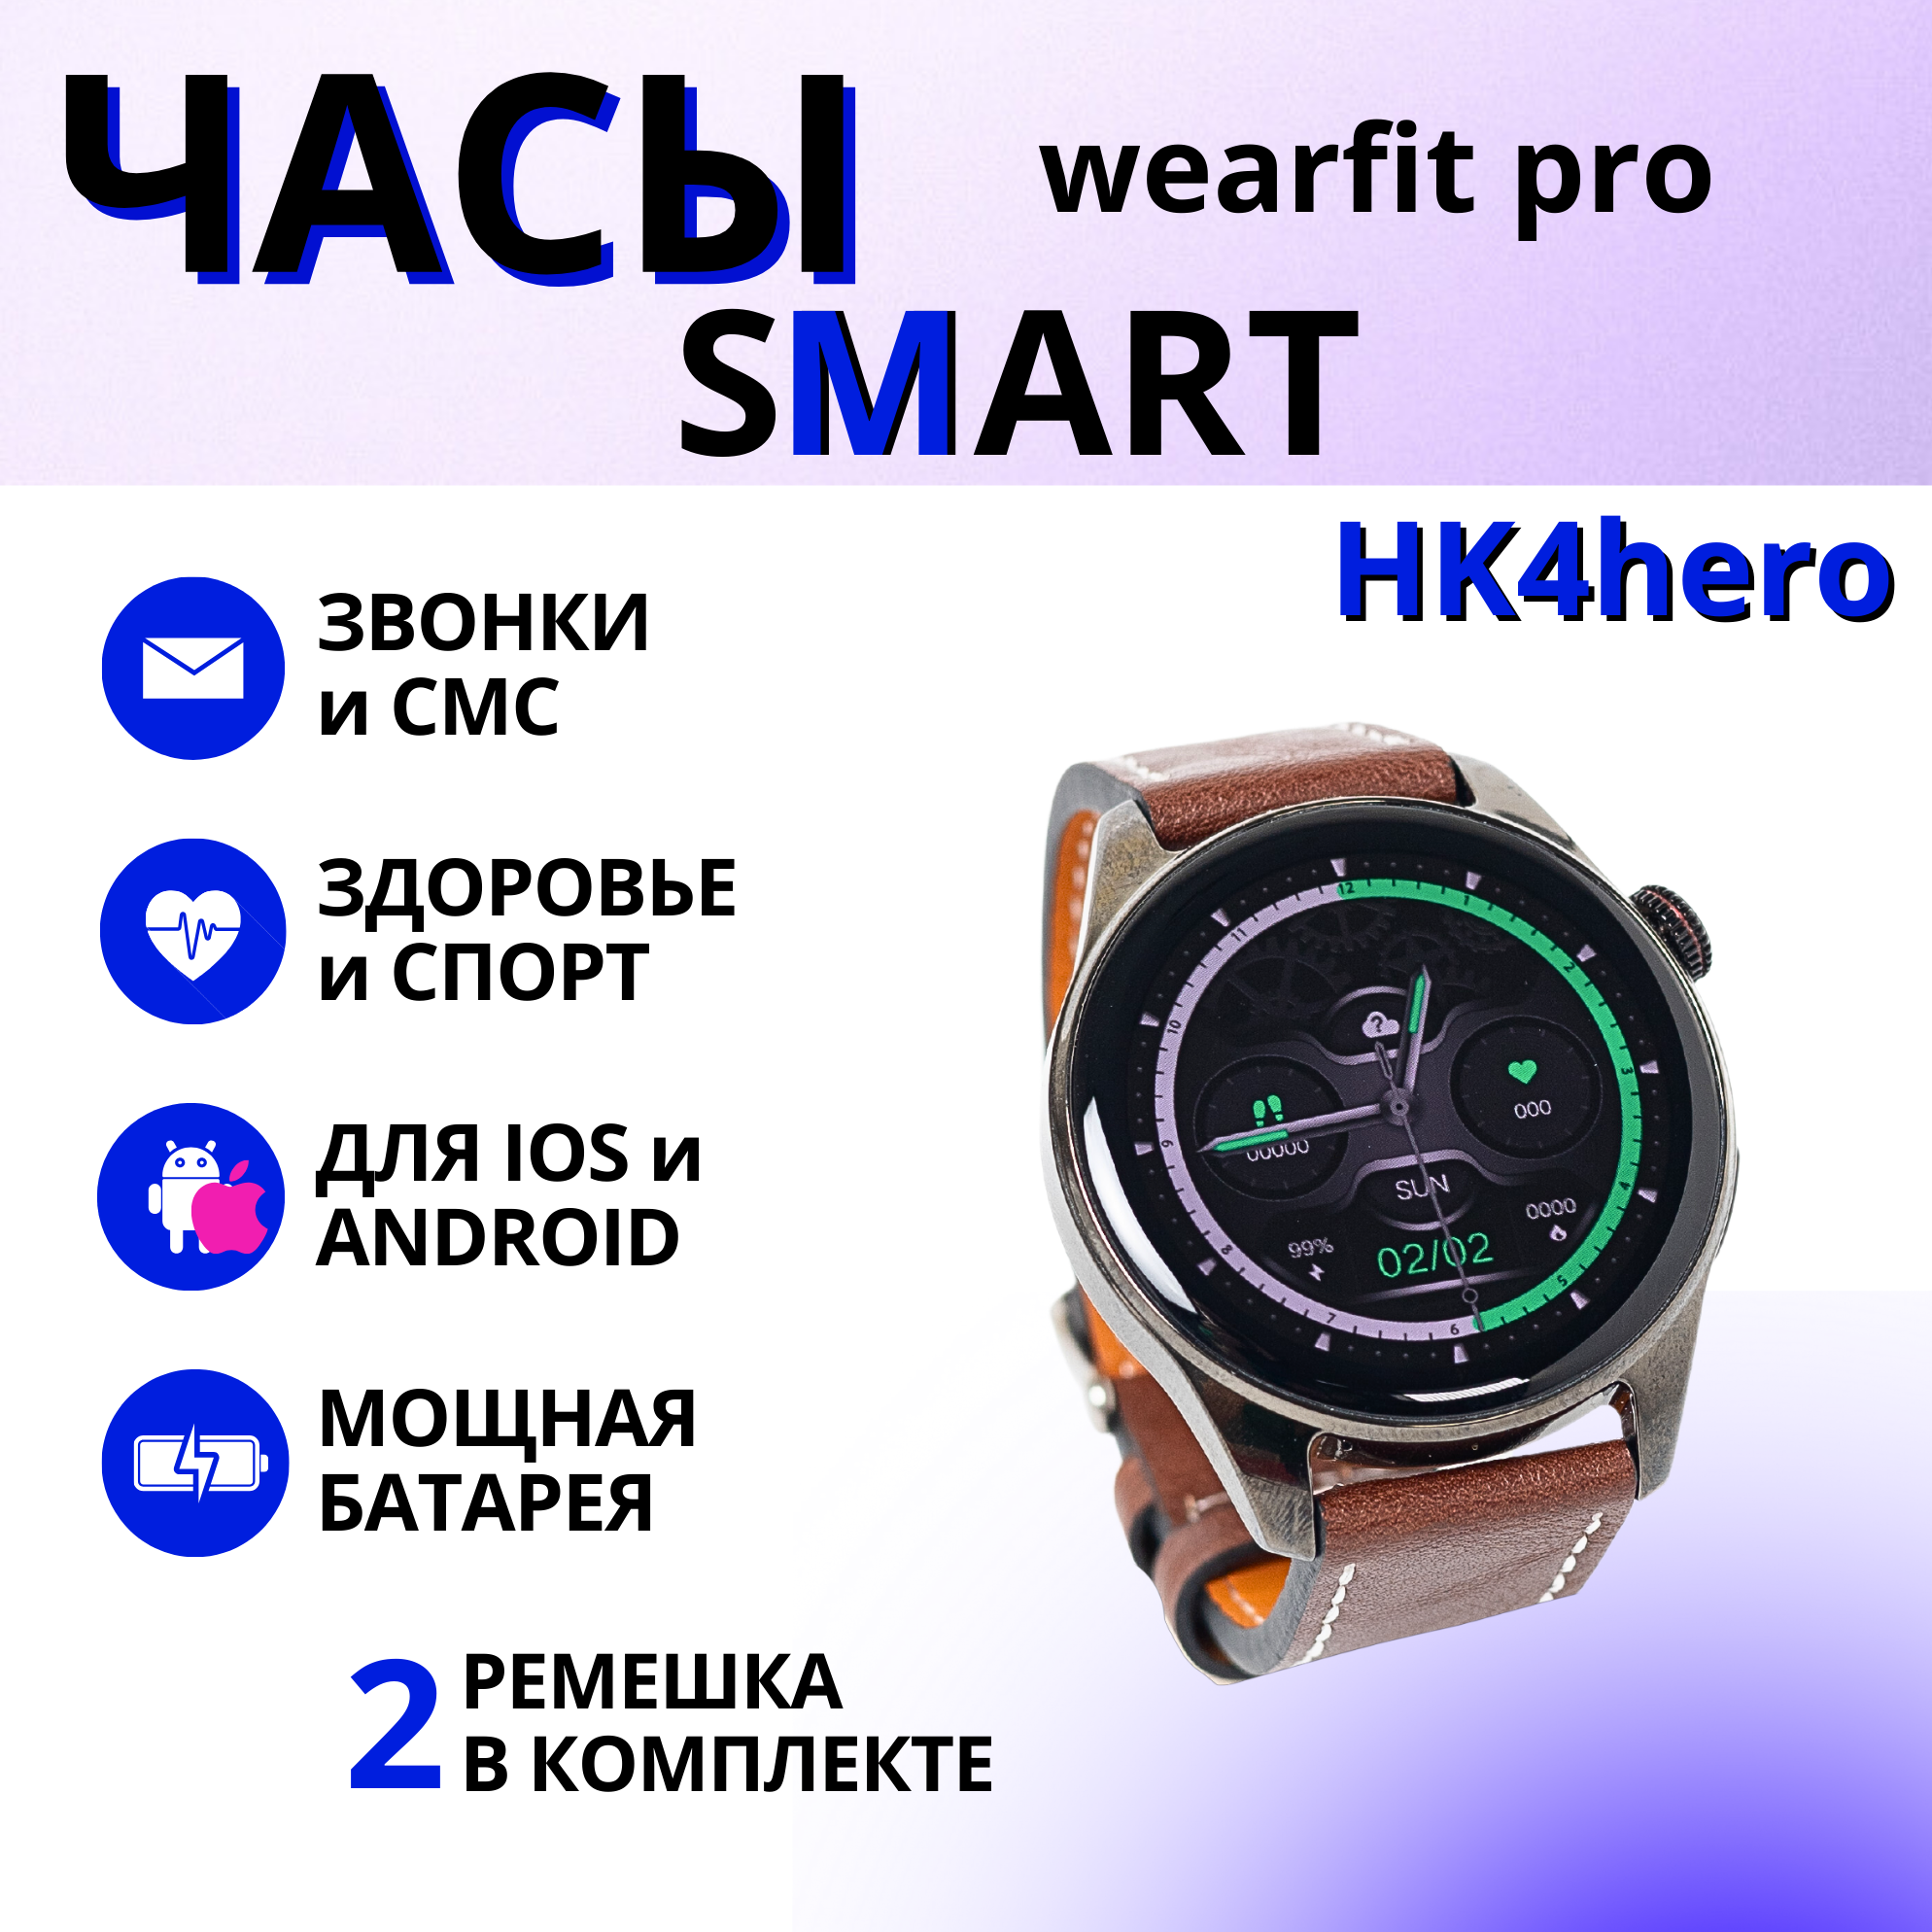 Умные спортивные водонепроницаемые смарт часы унисекс HK4 HERO с Bluetooth и AMOLED-экраном, для IPHONE и ANDROID